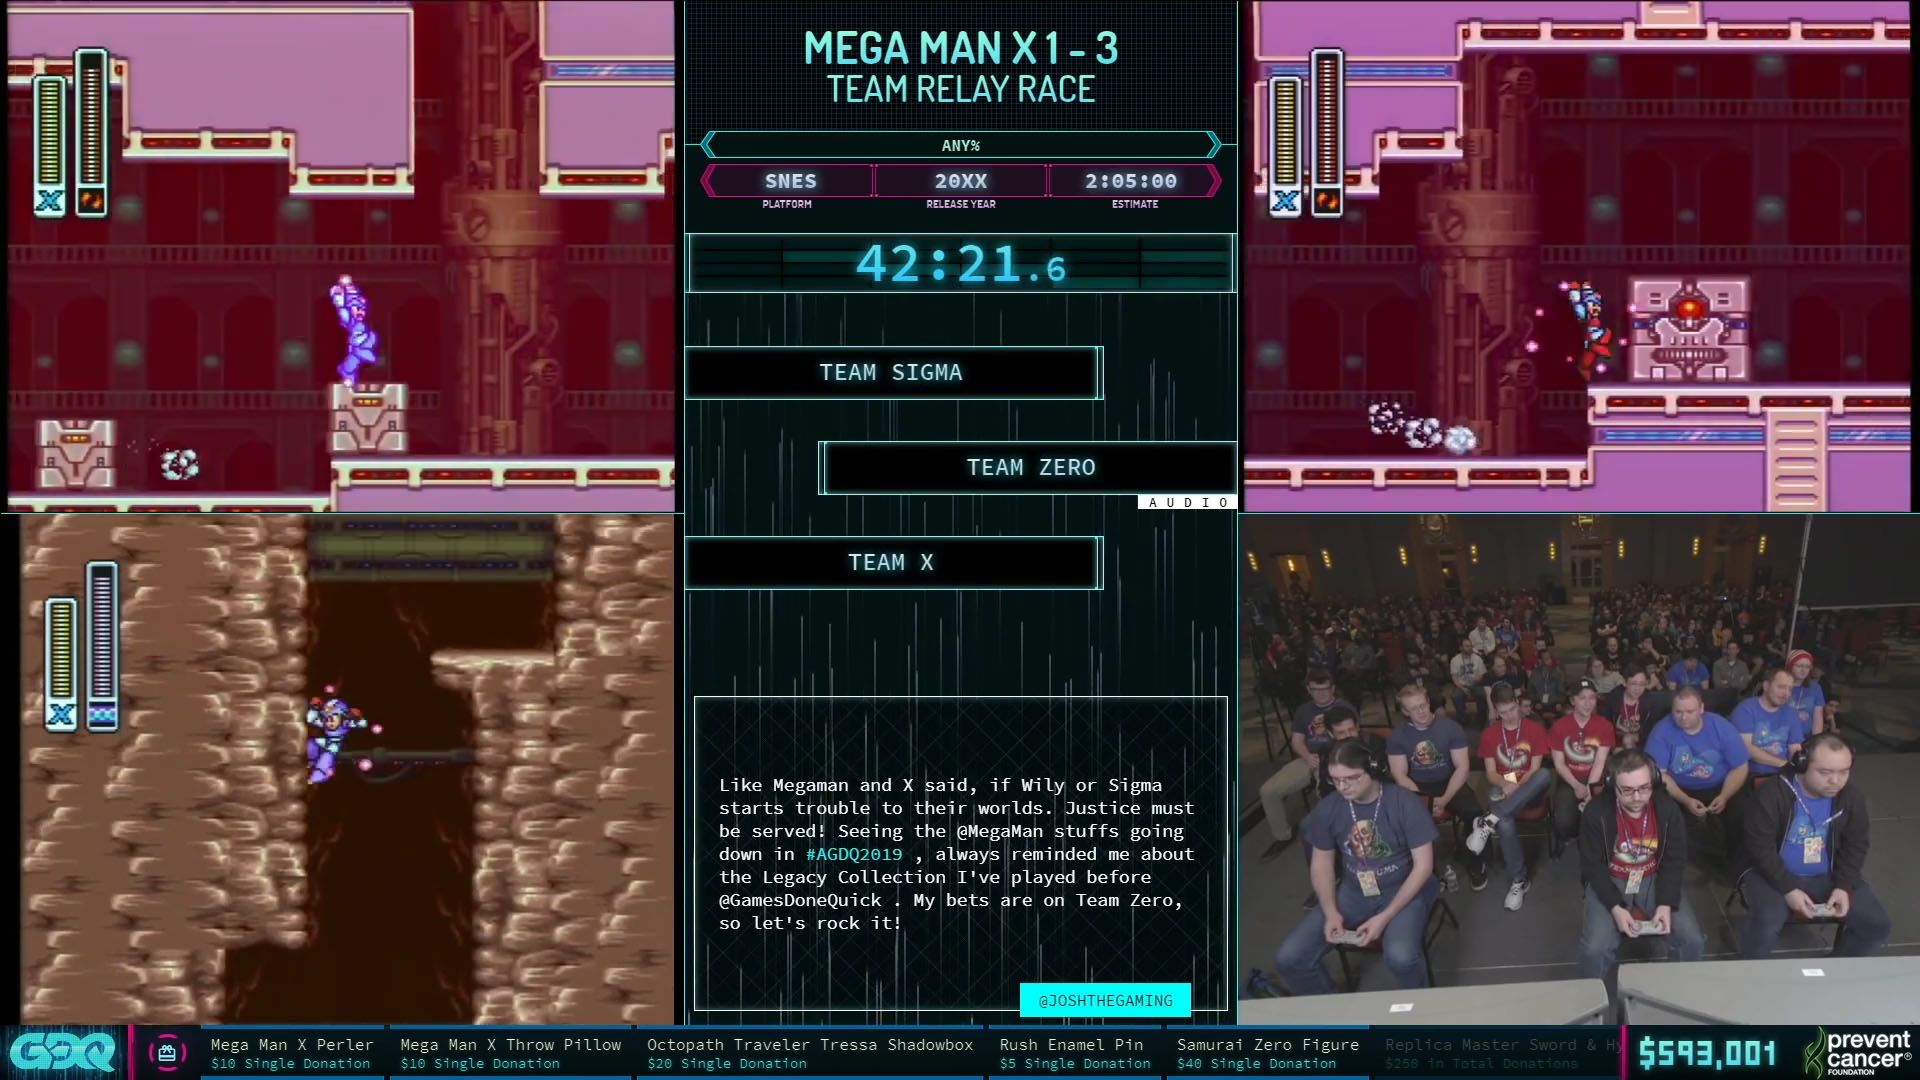 Mega Man X Trilogy